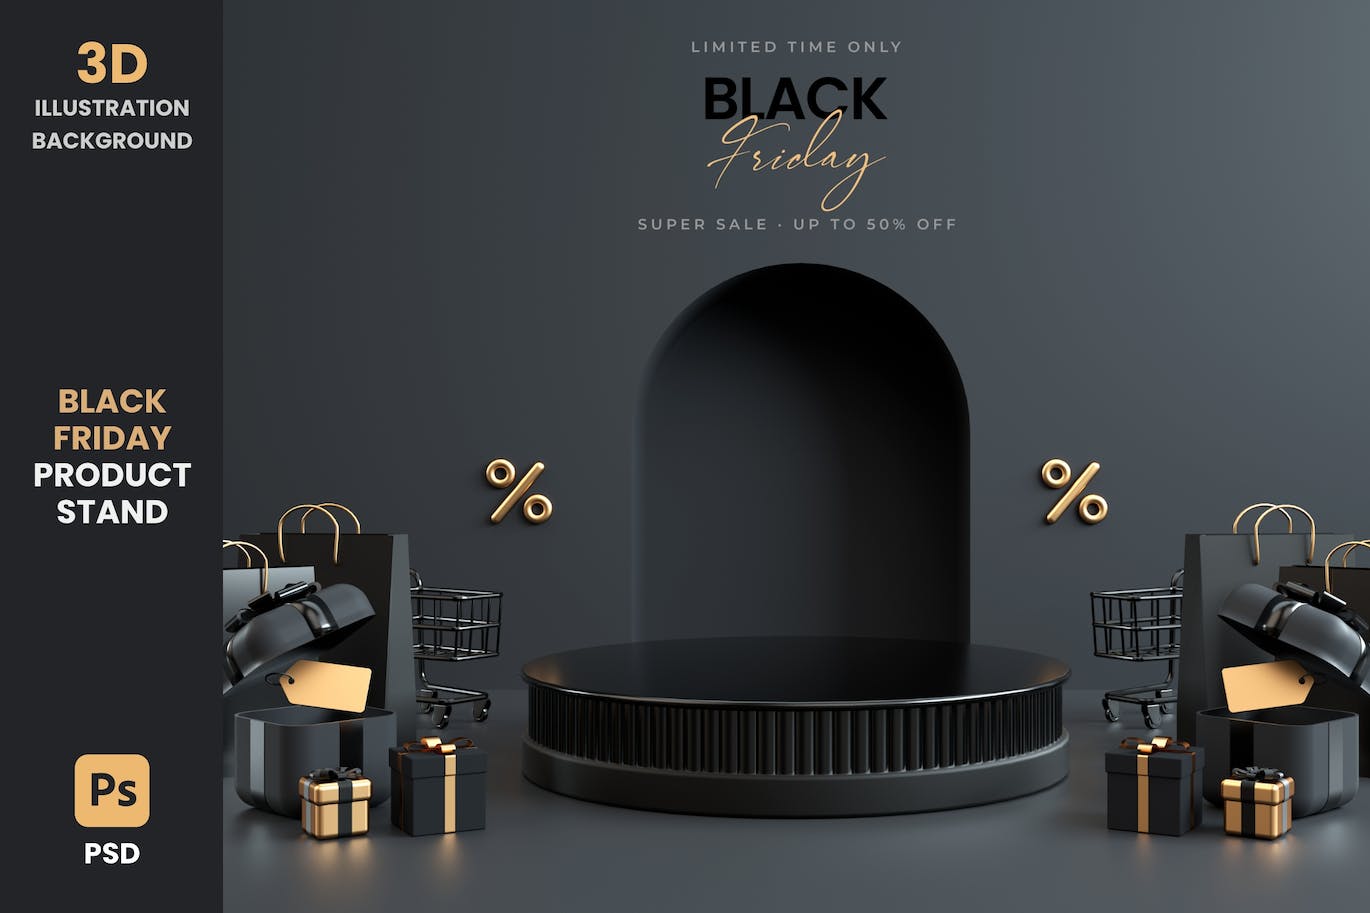 黑色星期五产品展台 3D 背景 (PSD,JPG)